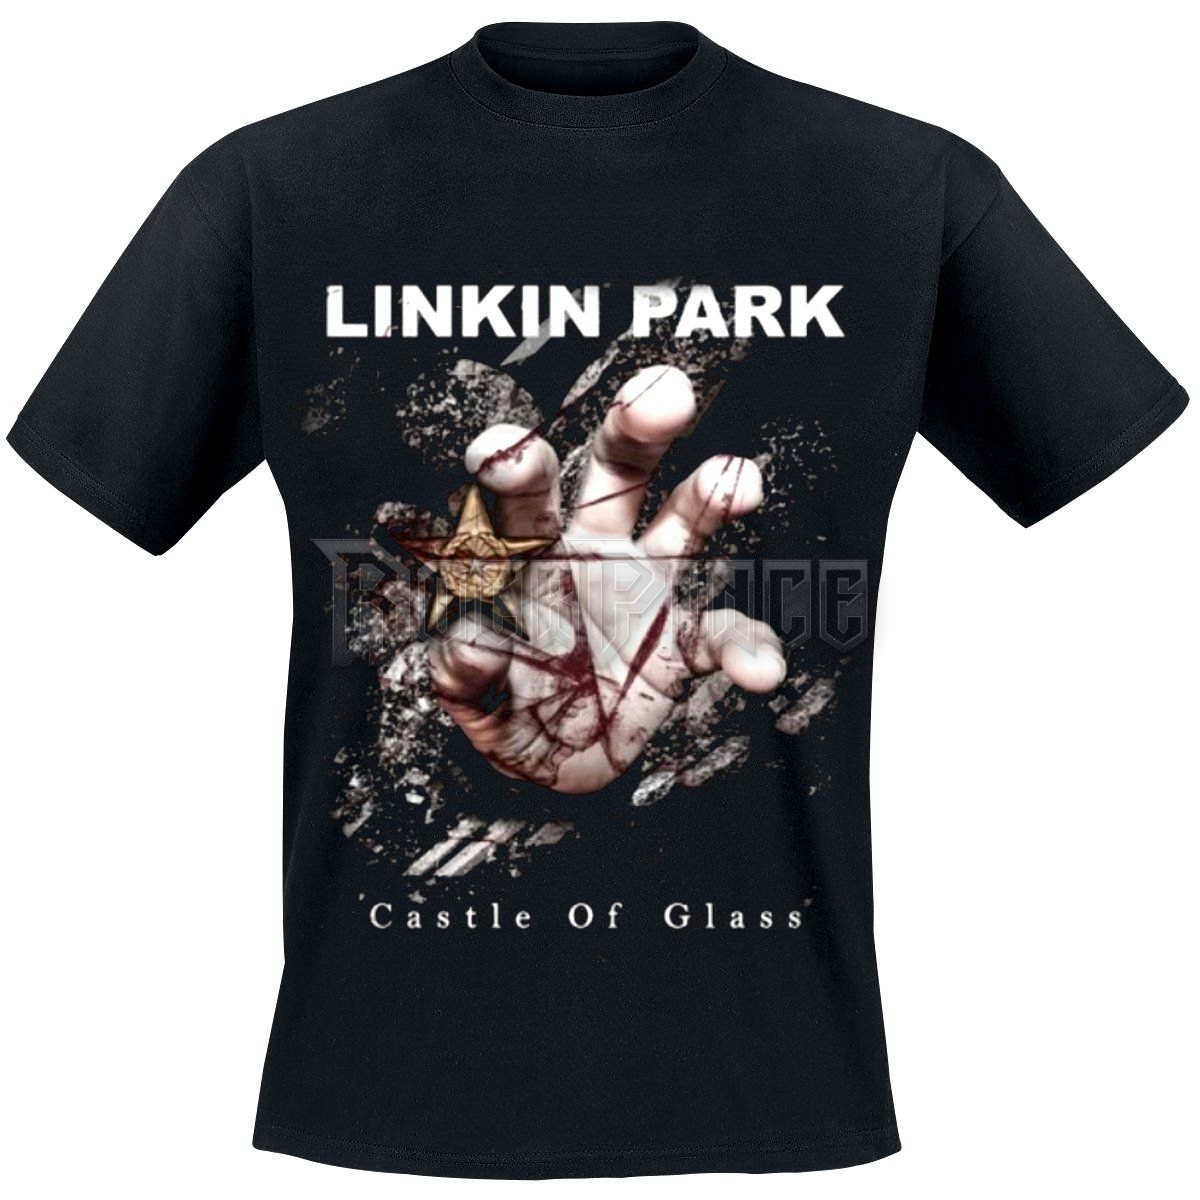 Linkin Park - Castle of Glass - UNISEX PÓLÓ